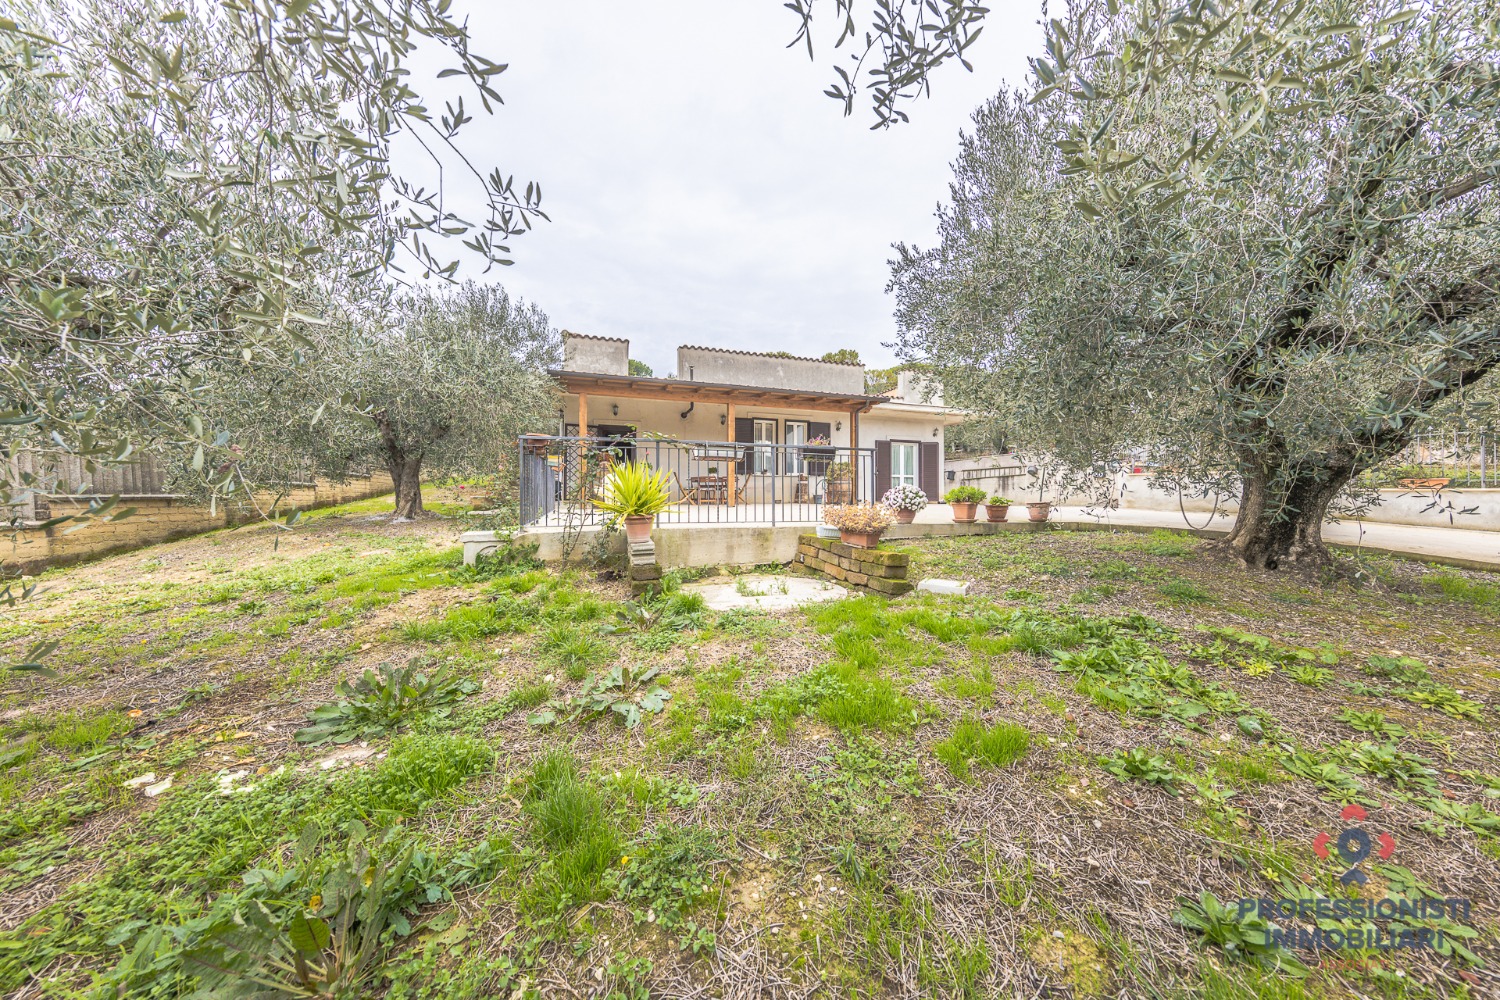 Villa a Schiera in vendita a Fonte Nuova, 3 locali, prezzo € 229.000 | CambioCasa.it